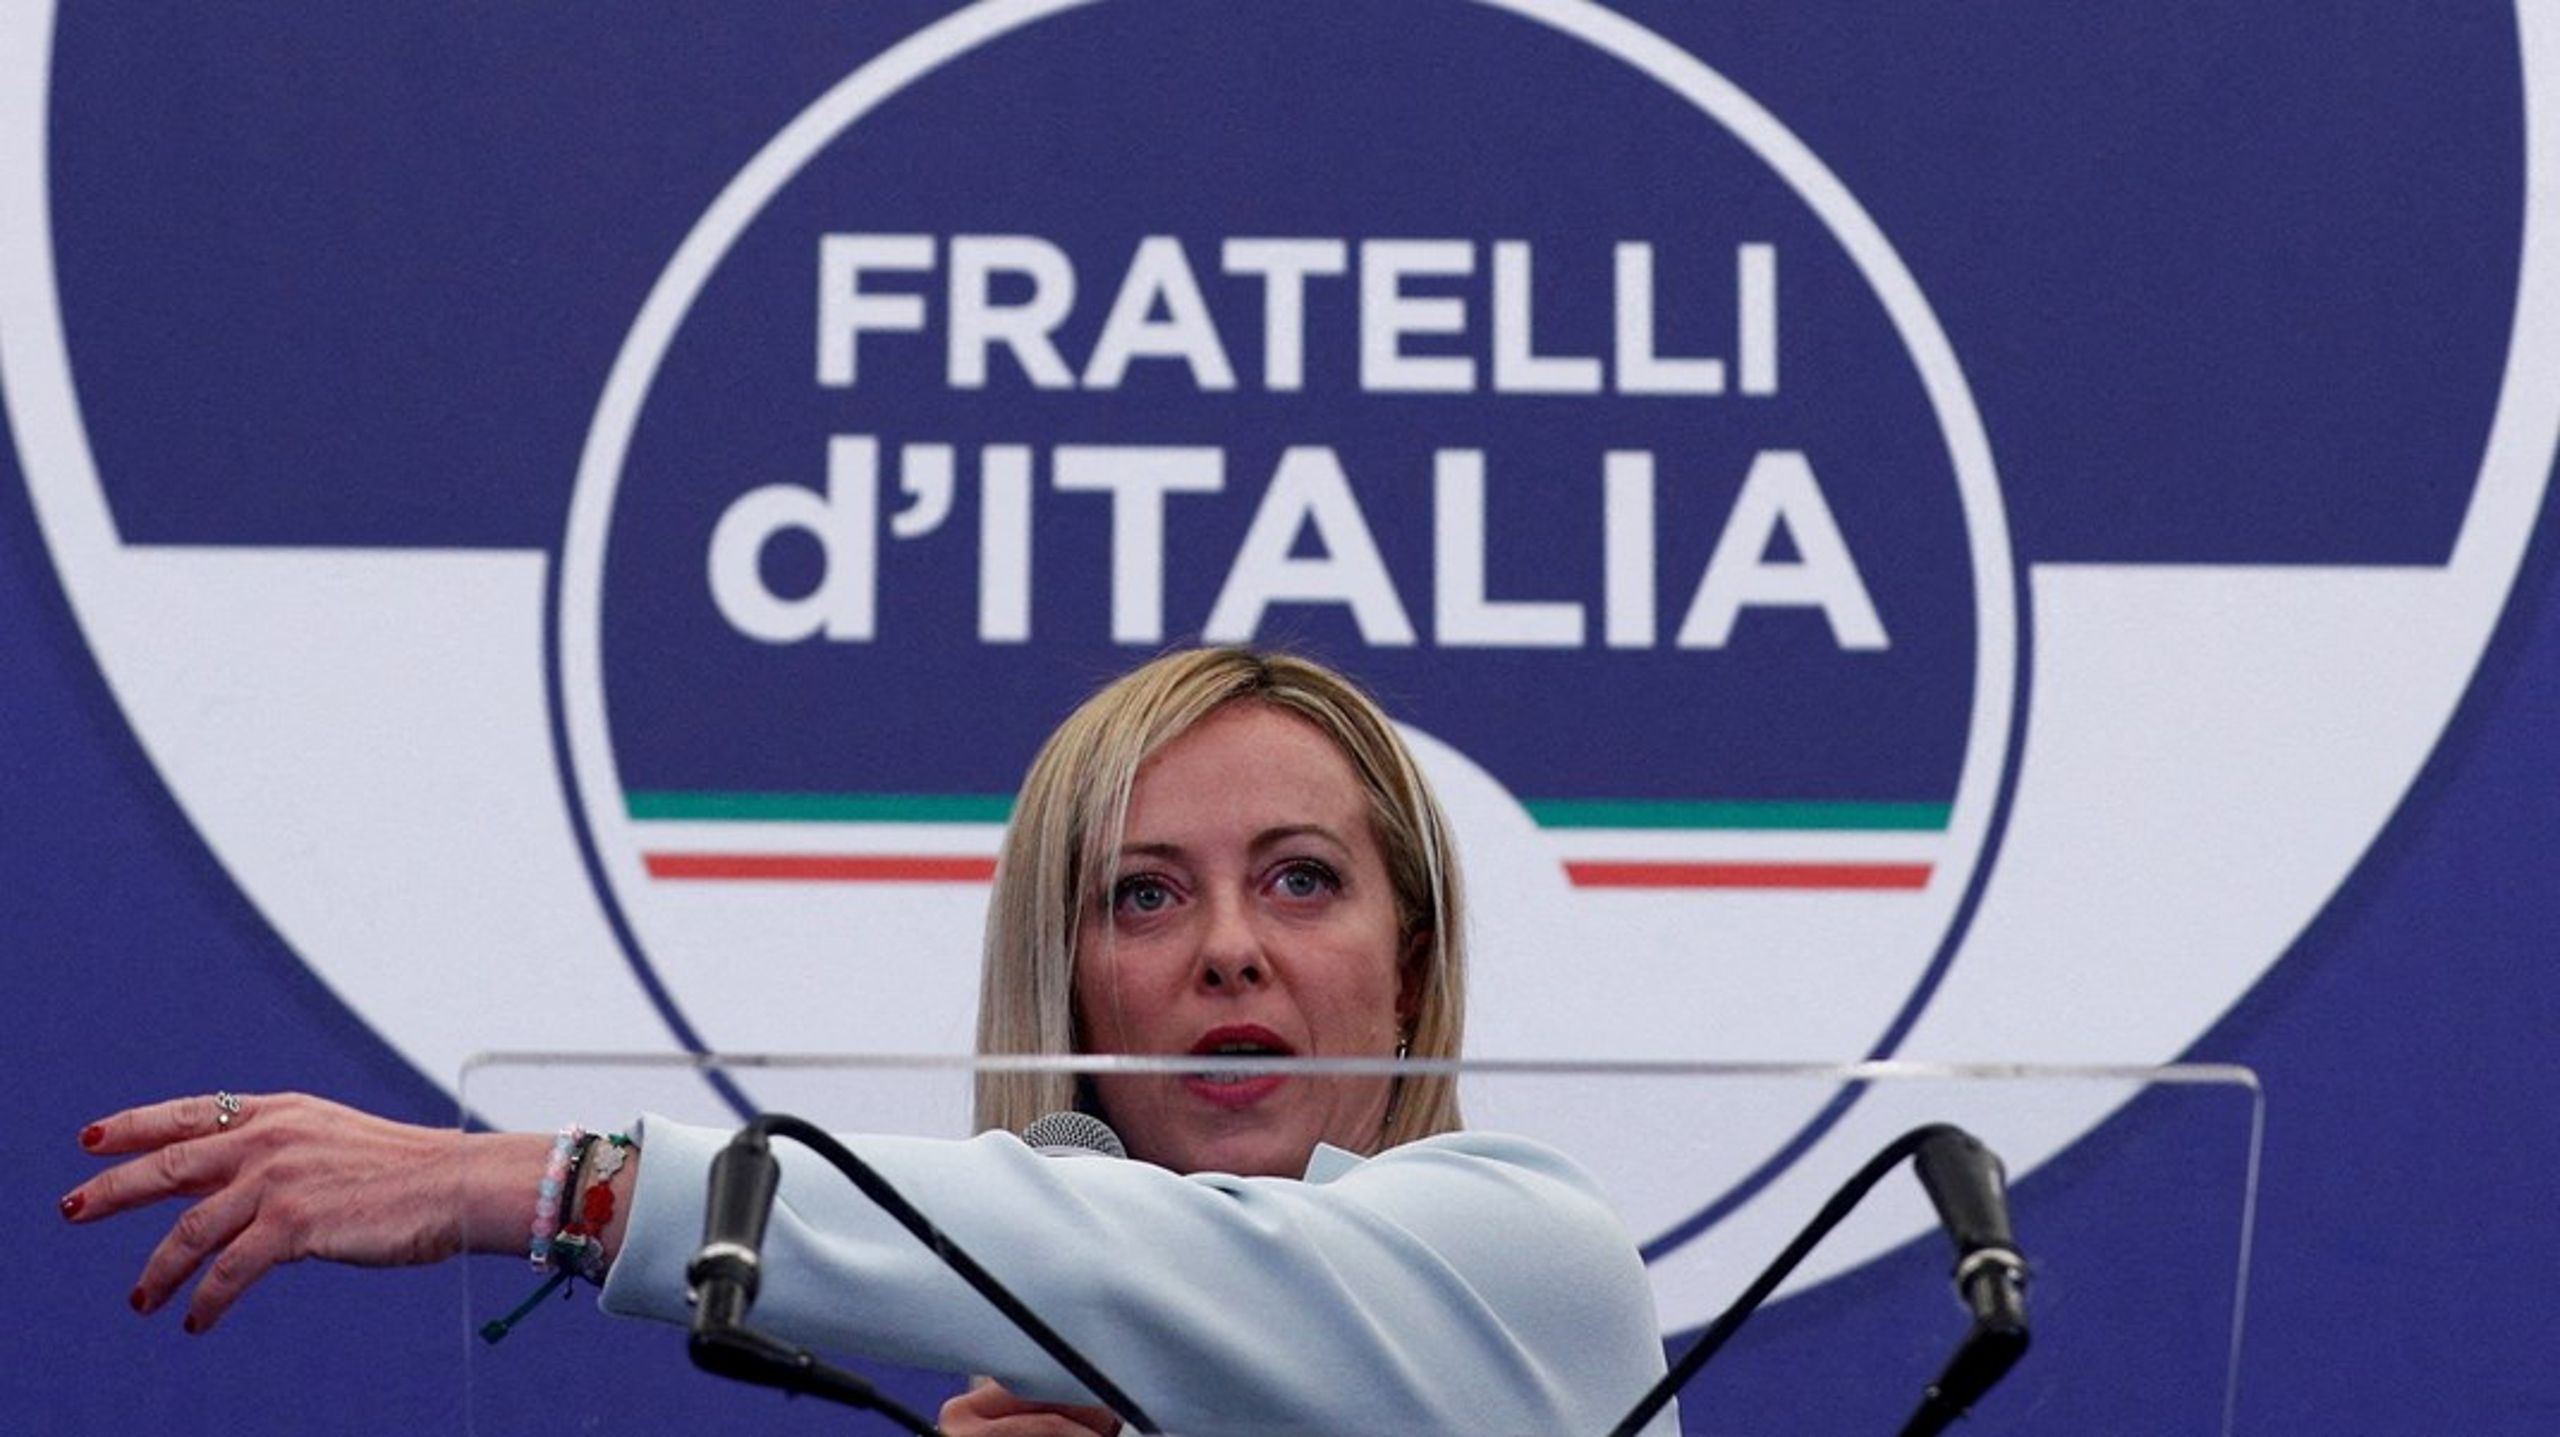 Den 45 år gamle lederen av det høyreorienterte partiet Fratelli d'Italia,
Giorgia Meloni, blir Italias nye regjeringssjef.